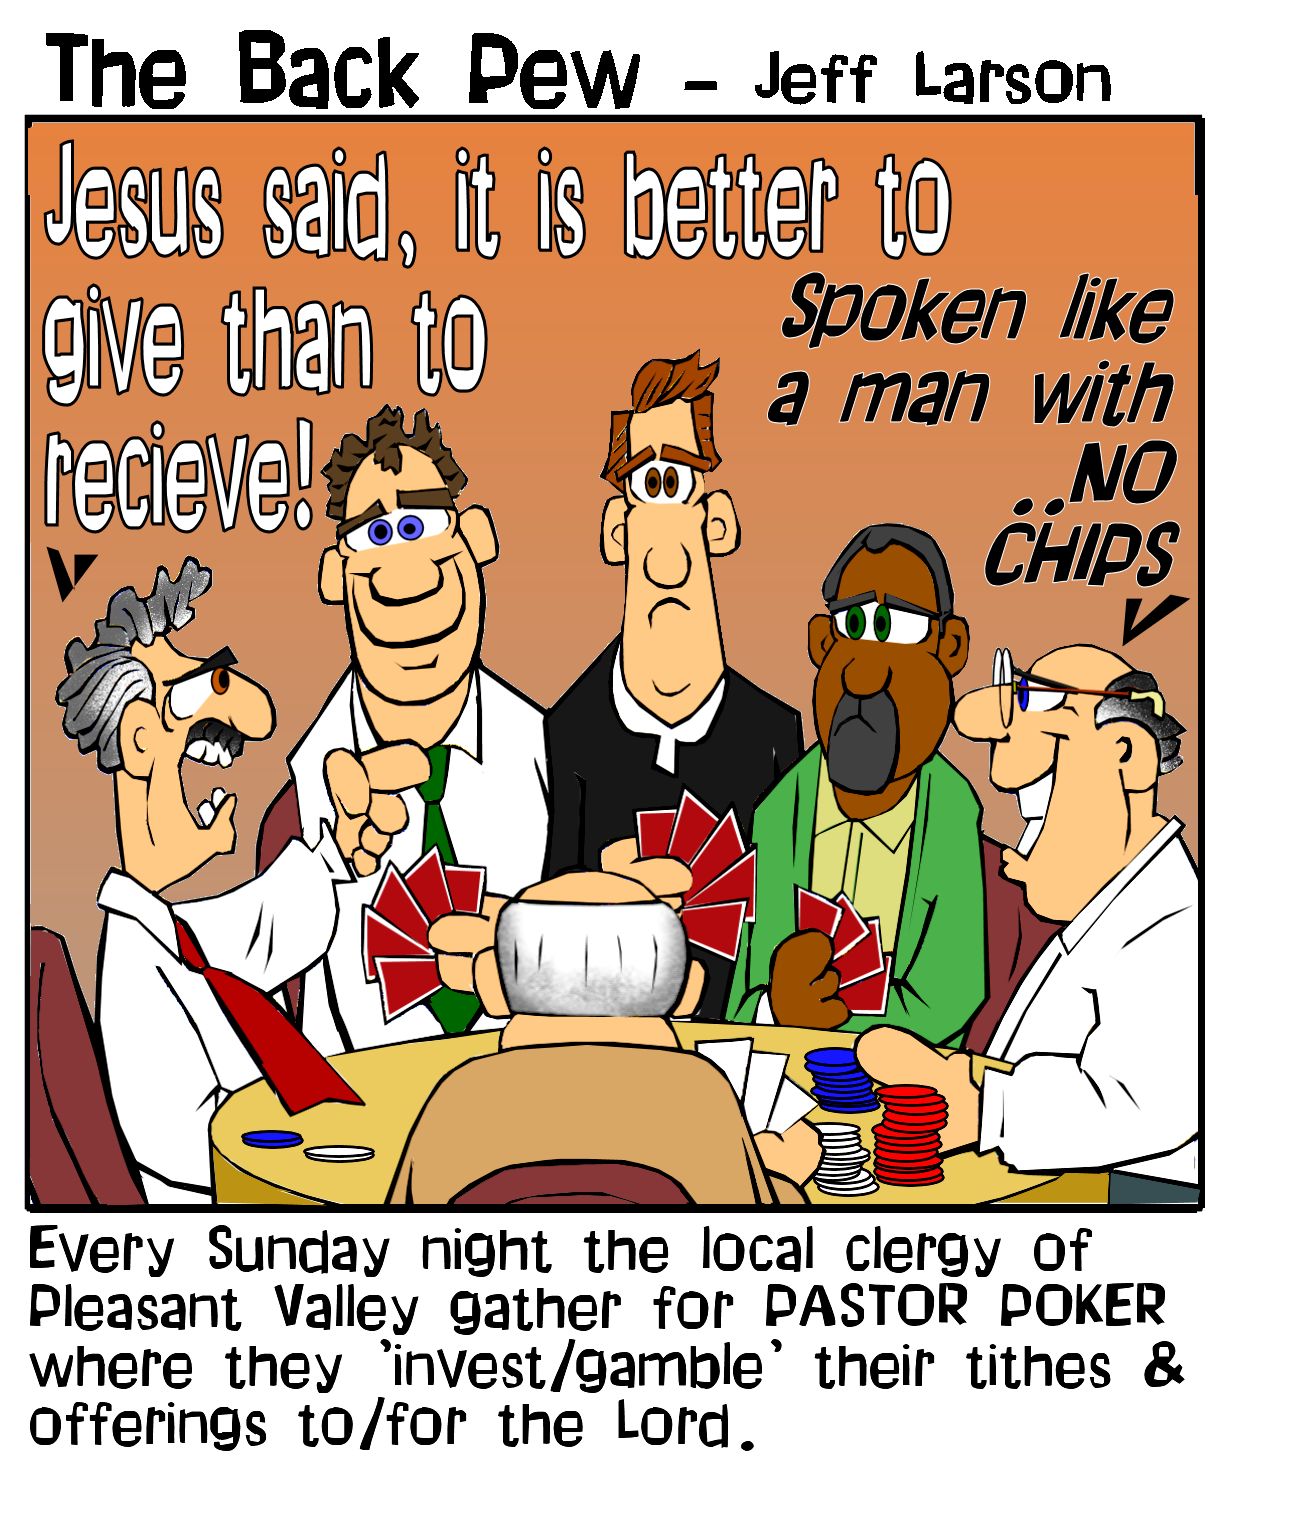 Pastor Poker